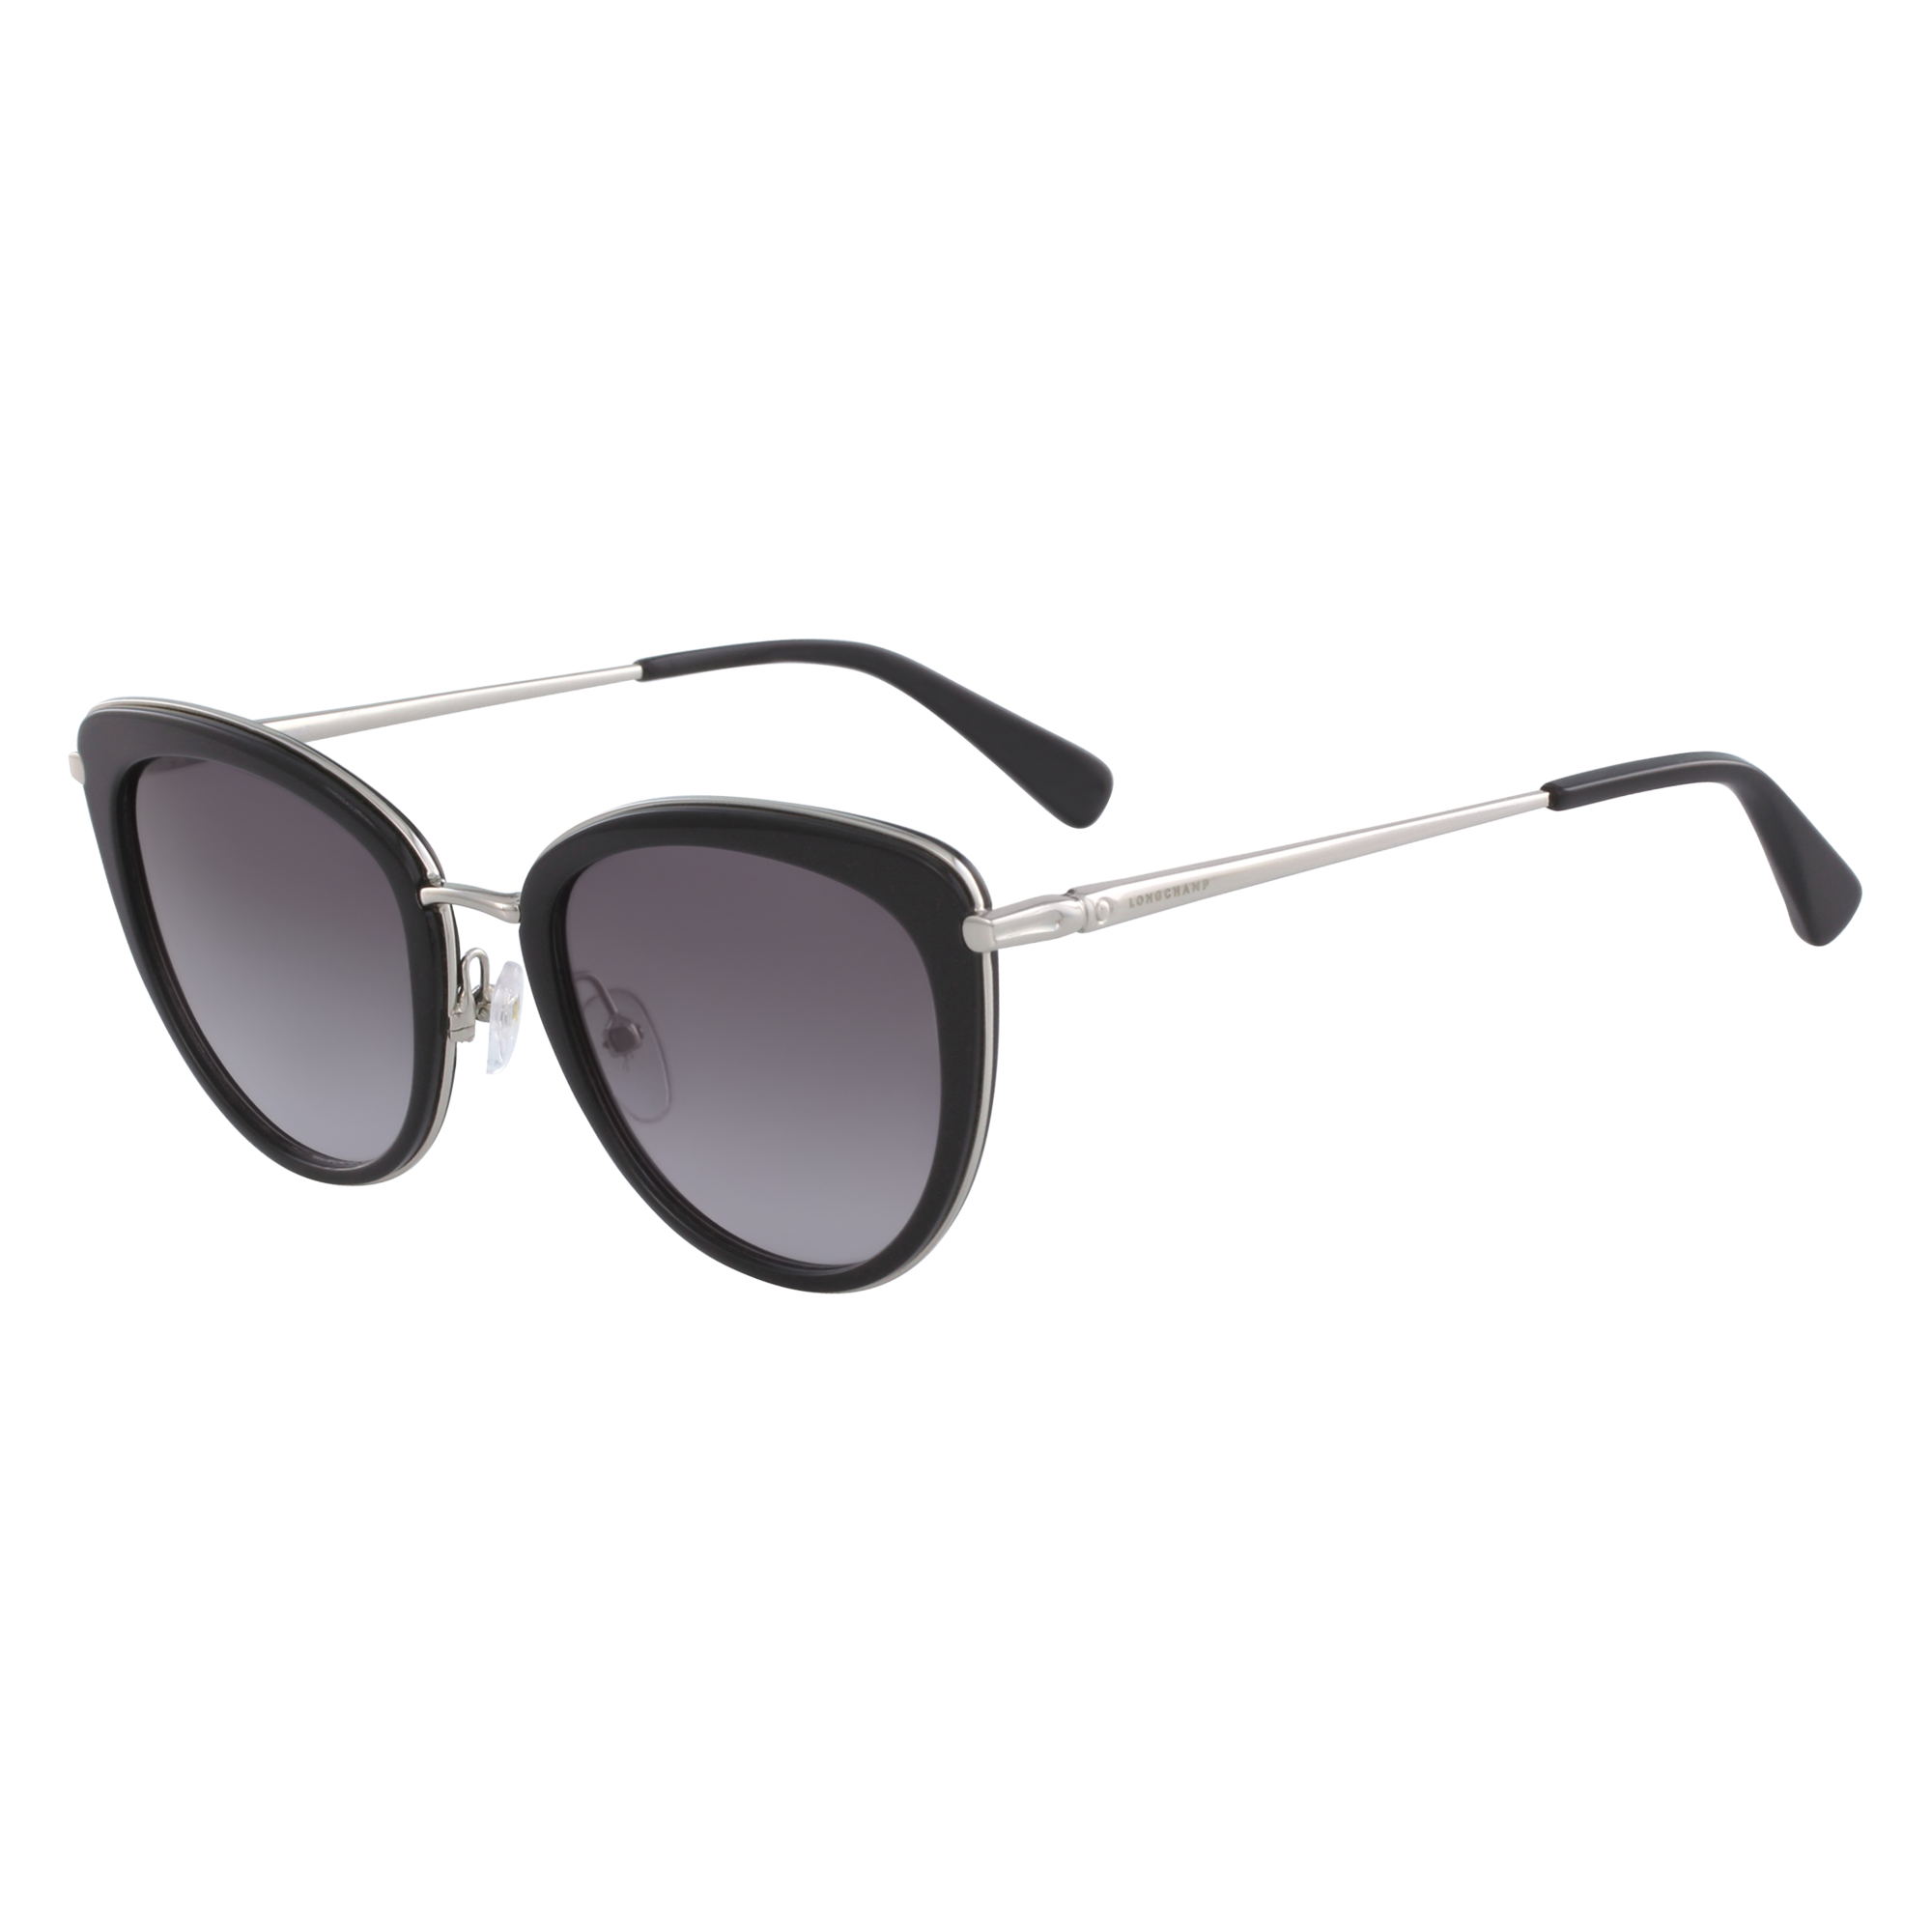 Sunglasses Glasses Black (55028LUM001 